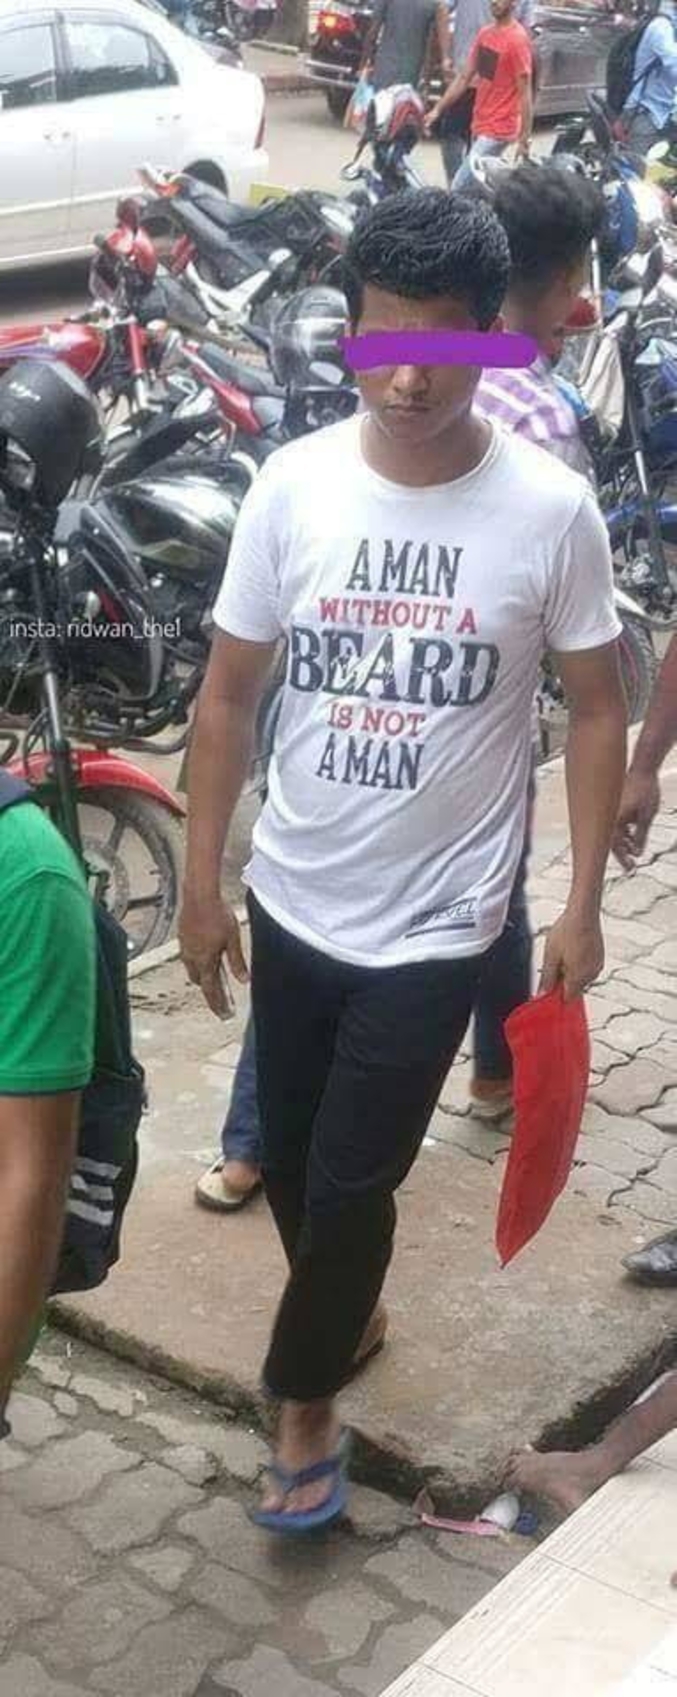 Un homme sans barbe n'est pas un homme.